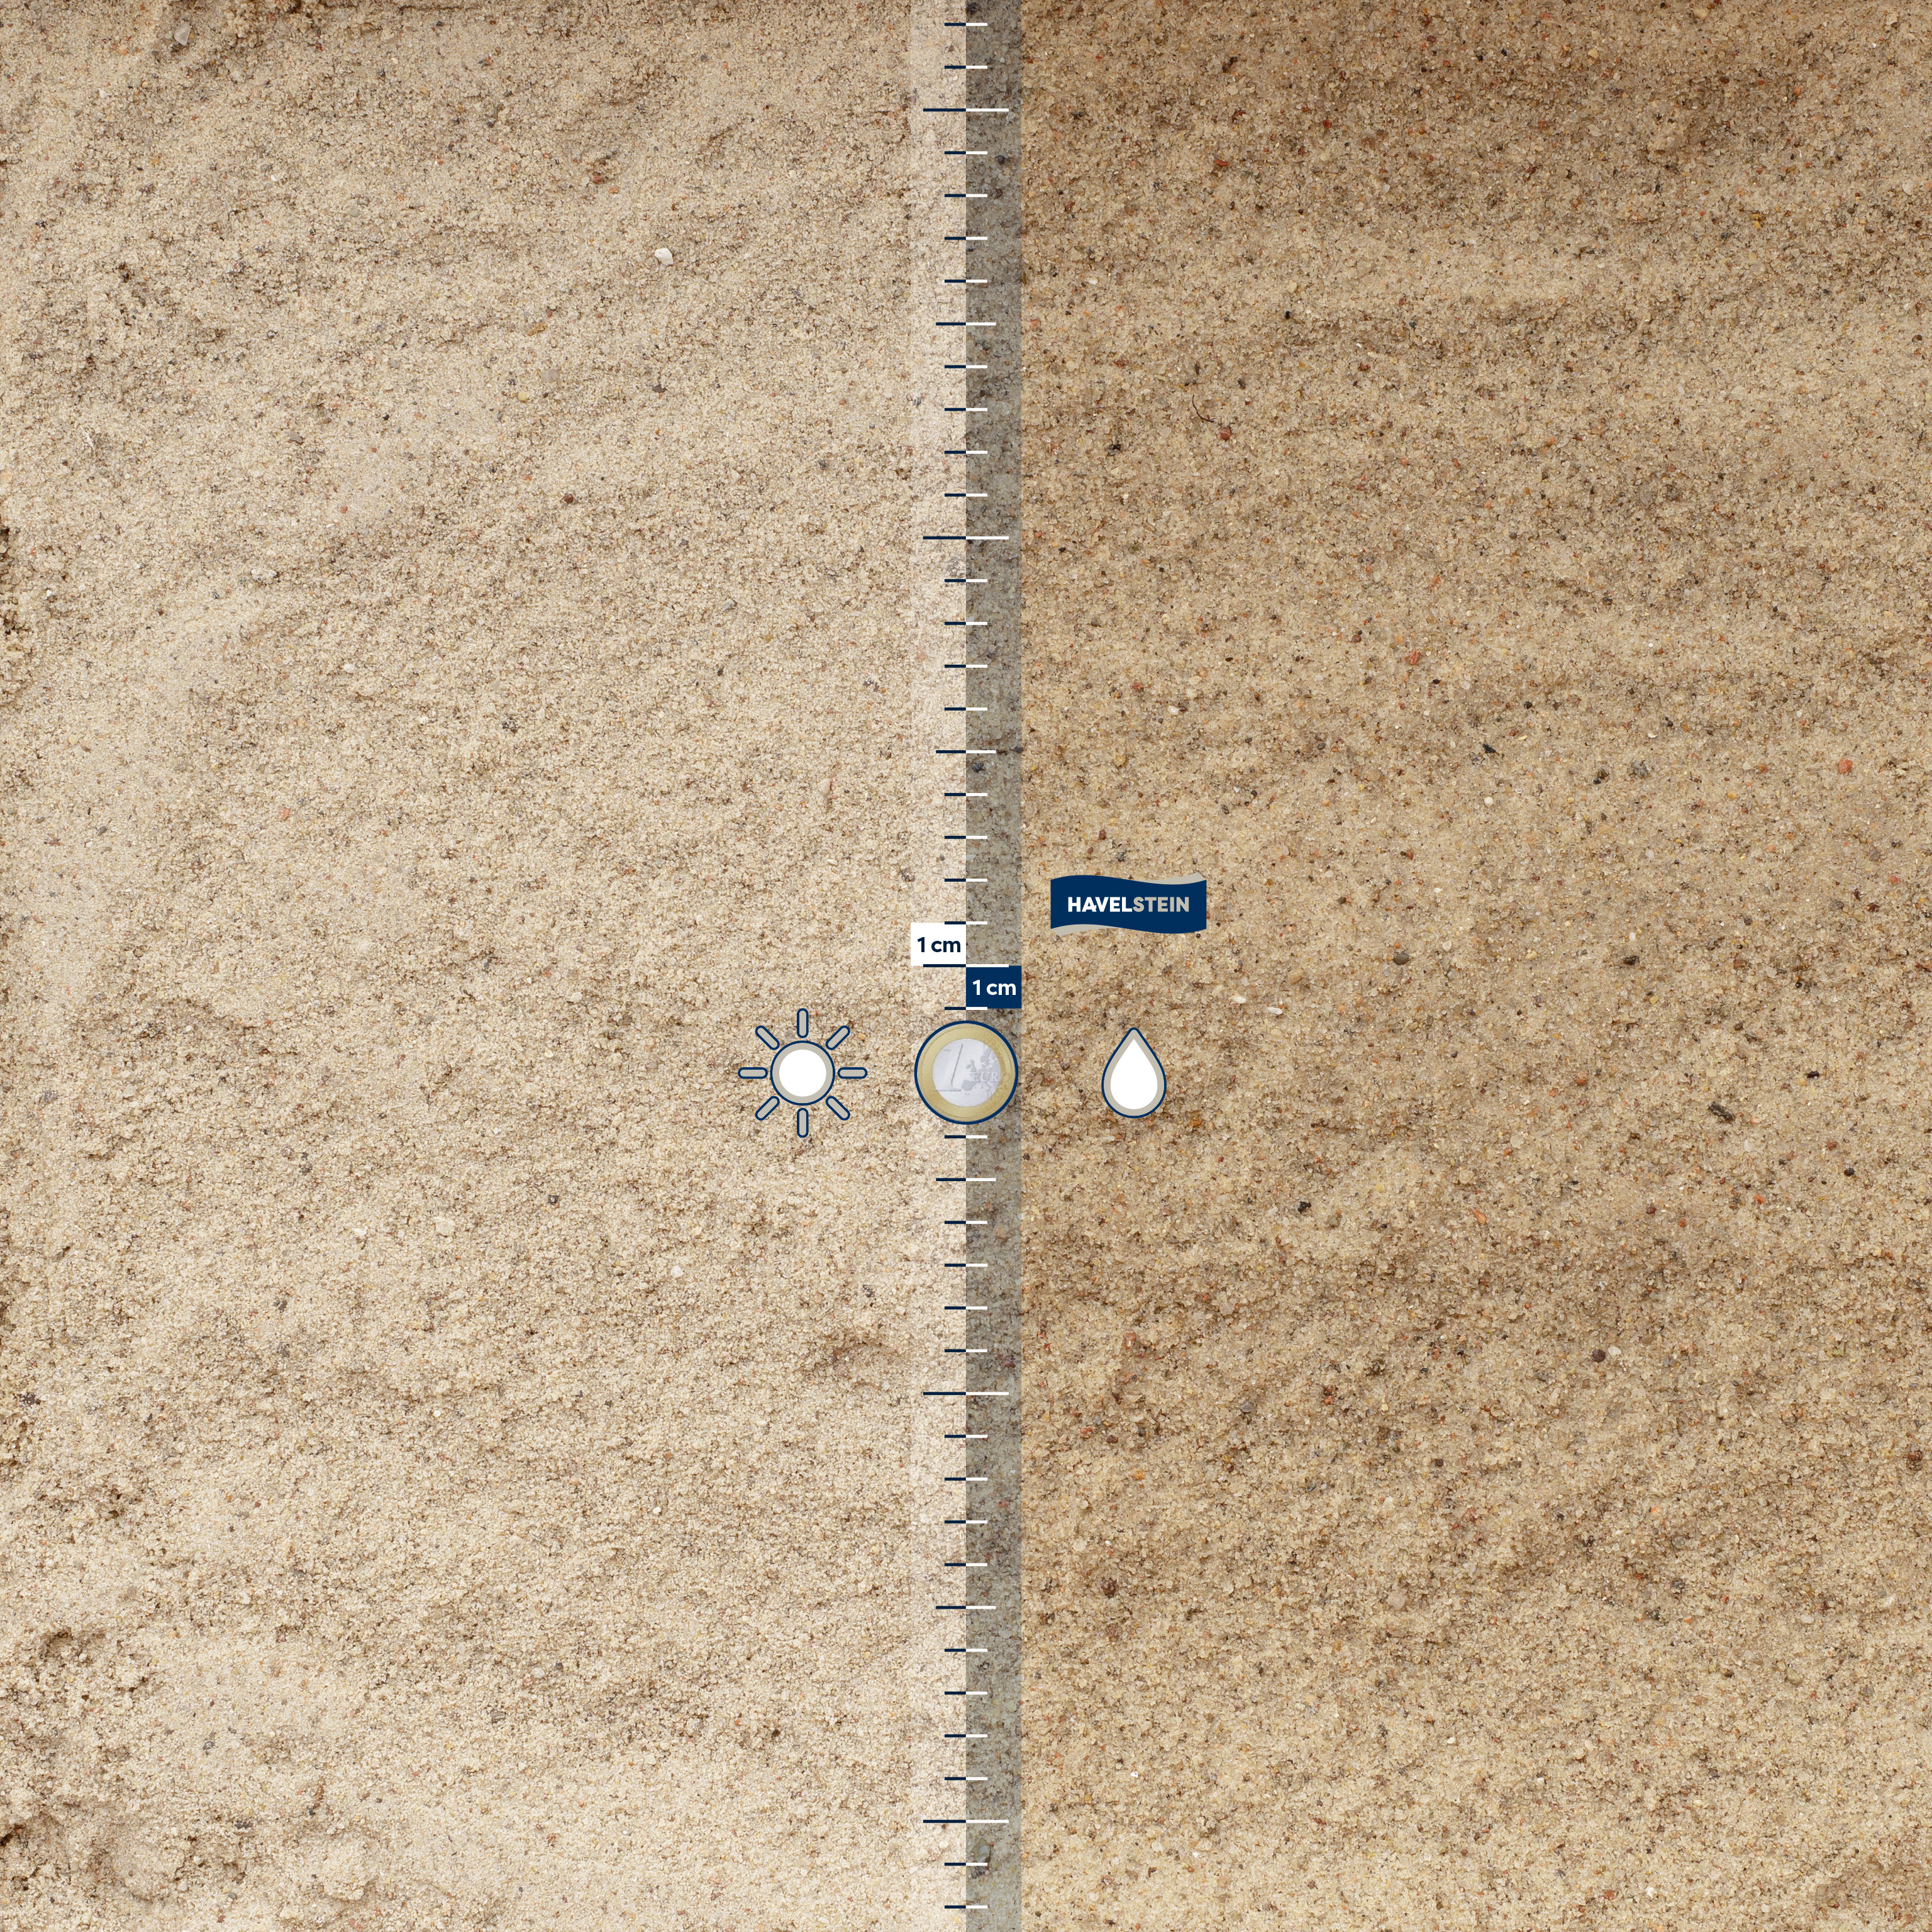 Sand für den Buddel- / Sandkasten, gewaschen (Sand (Allgemein)), Spielsand f?r Sandkasten, 0/2 mm, gewaschen (gelblich)